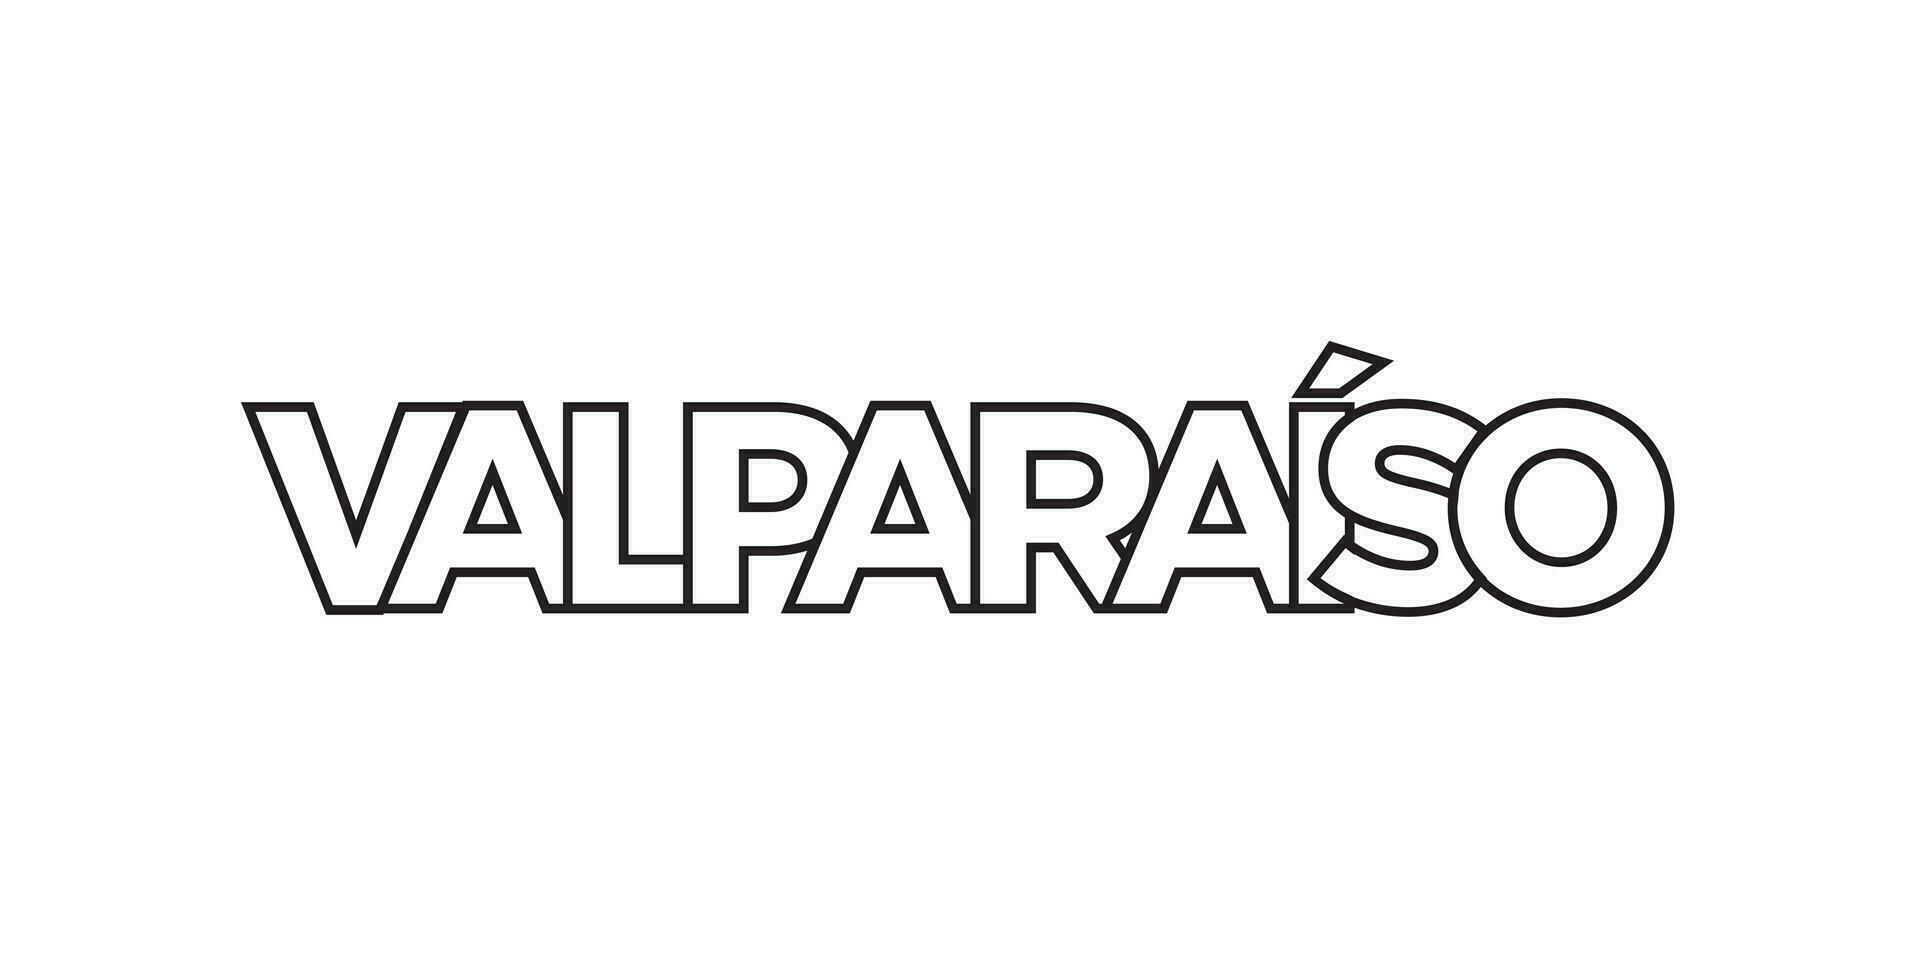 Valparaiso im das Chile Emblem. das Design Eigenschaften ein geometrisch Stil, Vektor Illustration mit Fett gedruckt Typografie im ein modern Schriftart. das Grafik Slogan Beschriftung.